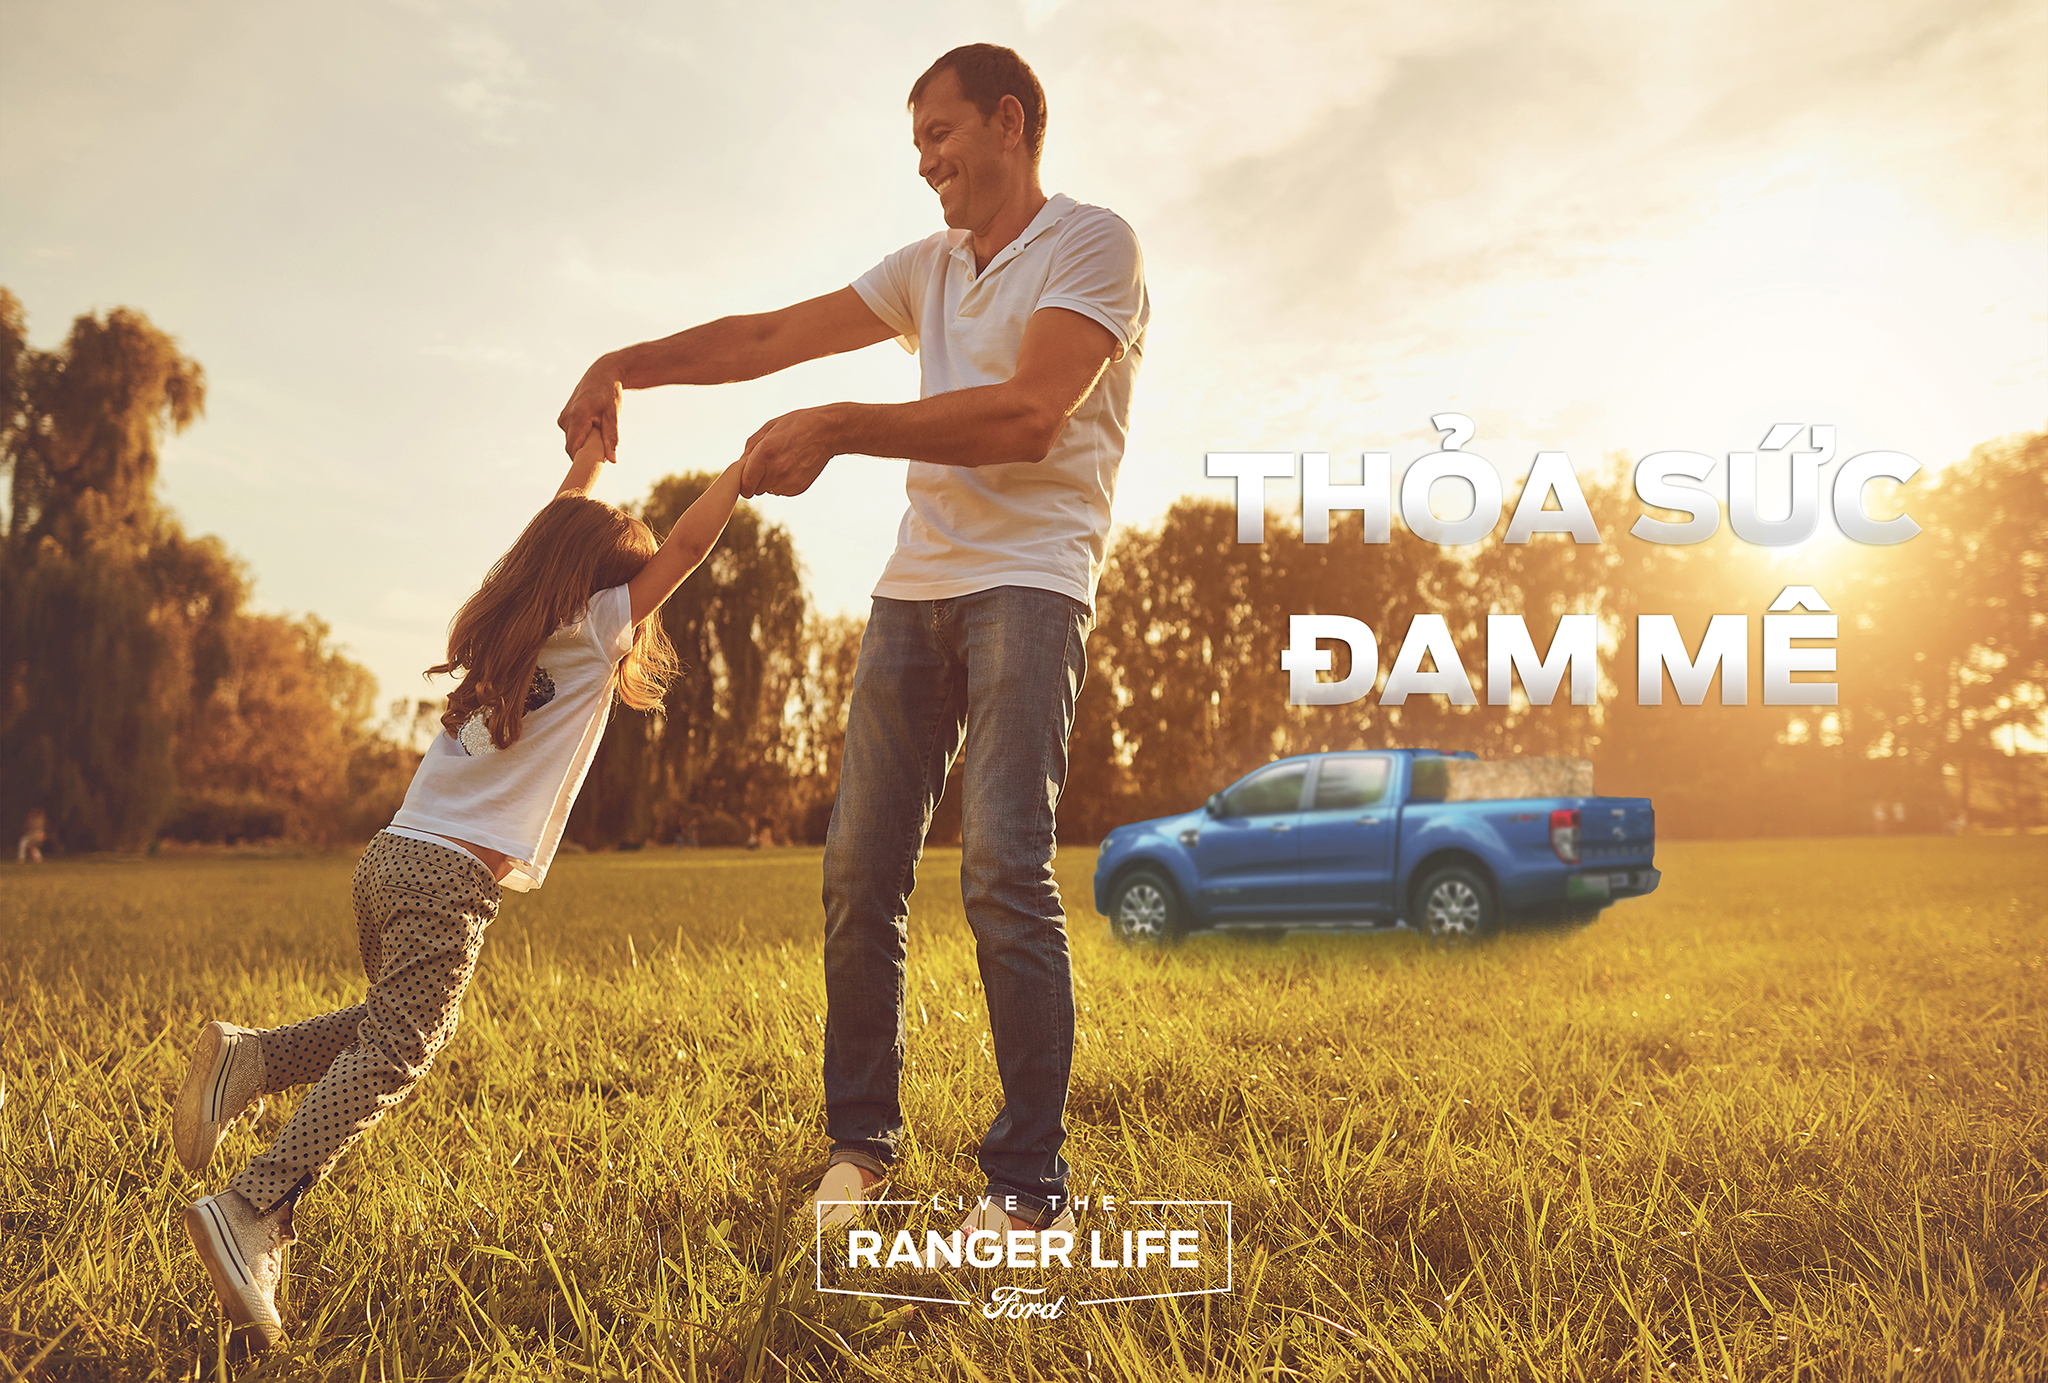 Ford khởi động chiến dịch thương hiệu mới Live The Ranger Life thoa-suc-dam-me.jpg